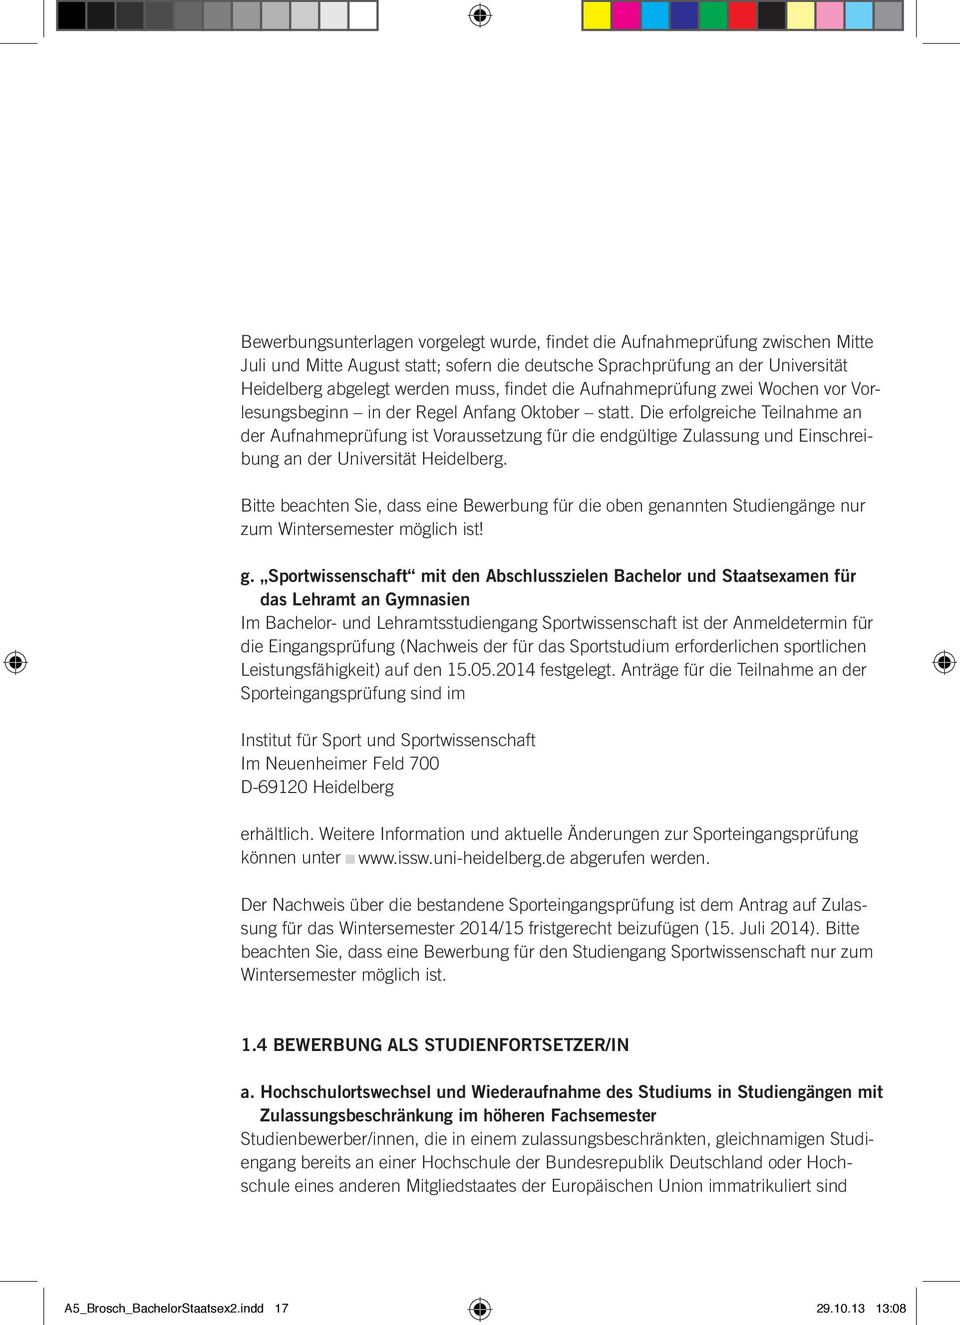 Die erfolgreiche Teilnahme an der Aufnahmeprüfung ist Voraussetzung für die endgültige Zulassung und Einschreibung an der Universität Heidelberg.